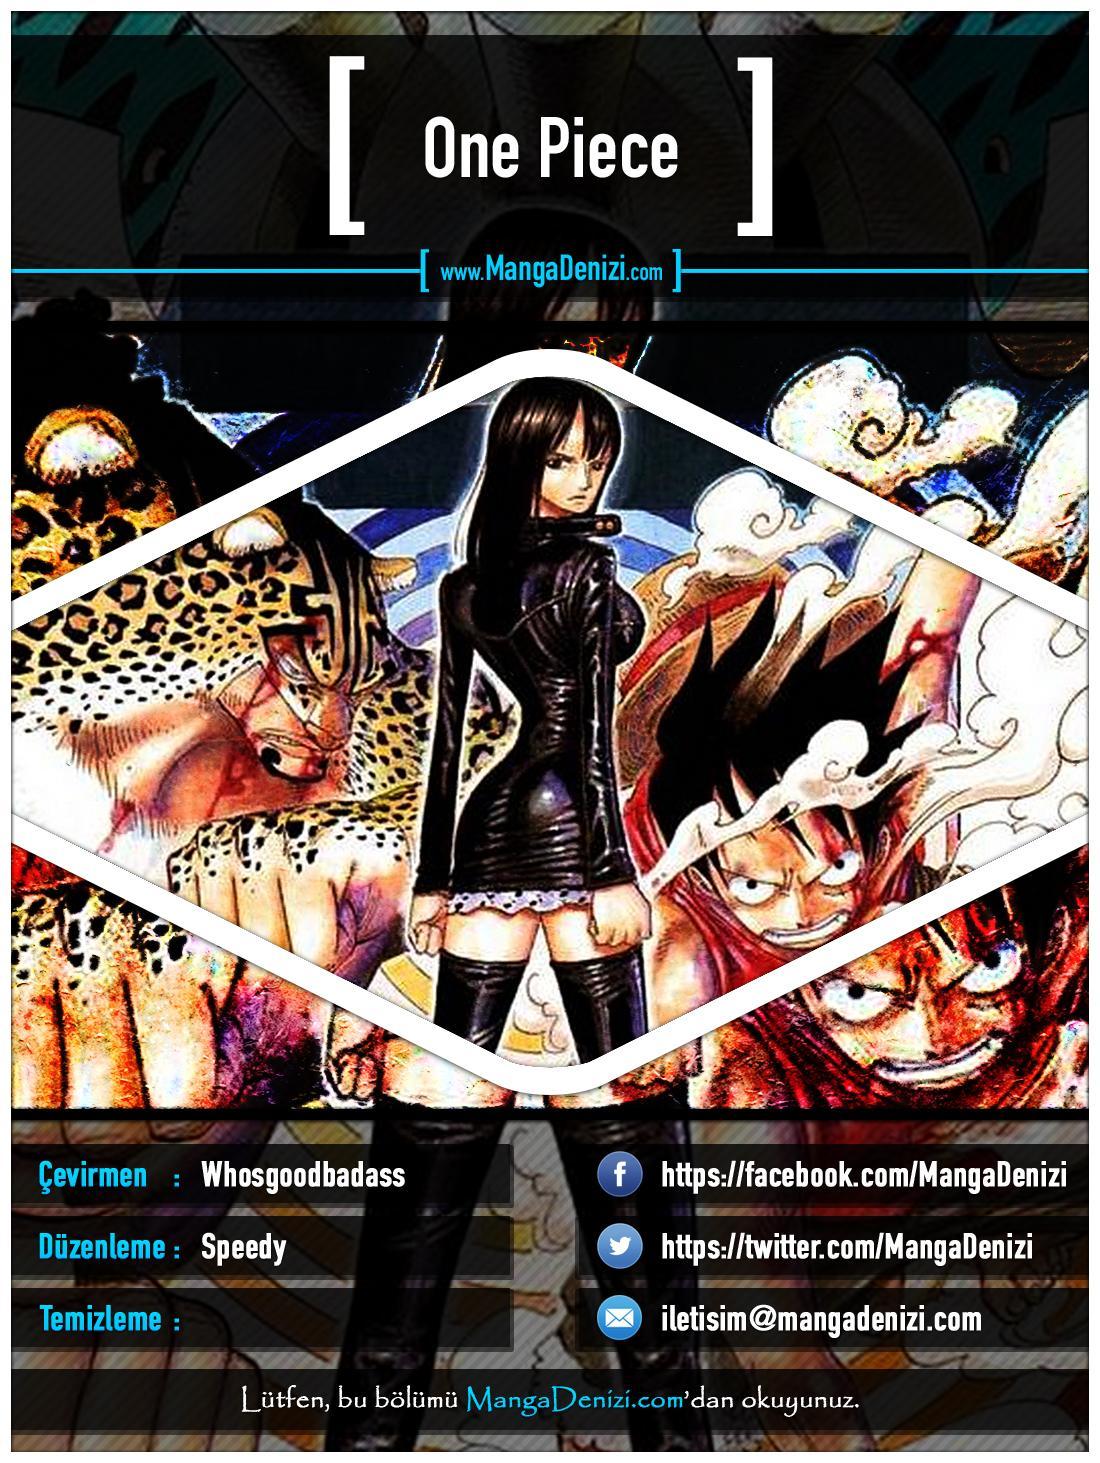 One Piece [Renkli] mangasının 0354 bölümünün 1. sayfasını okuyorsunuz.